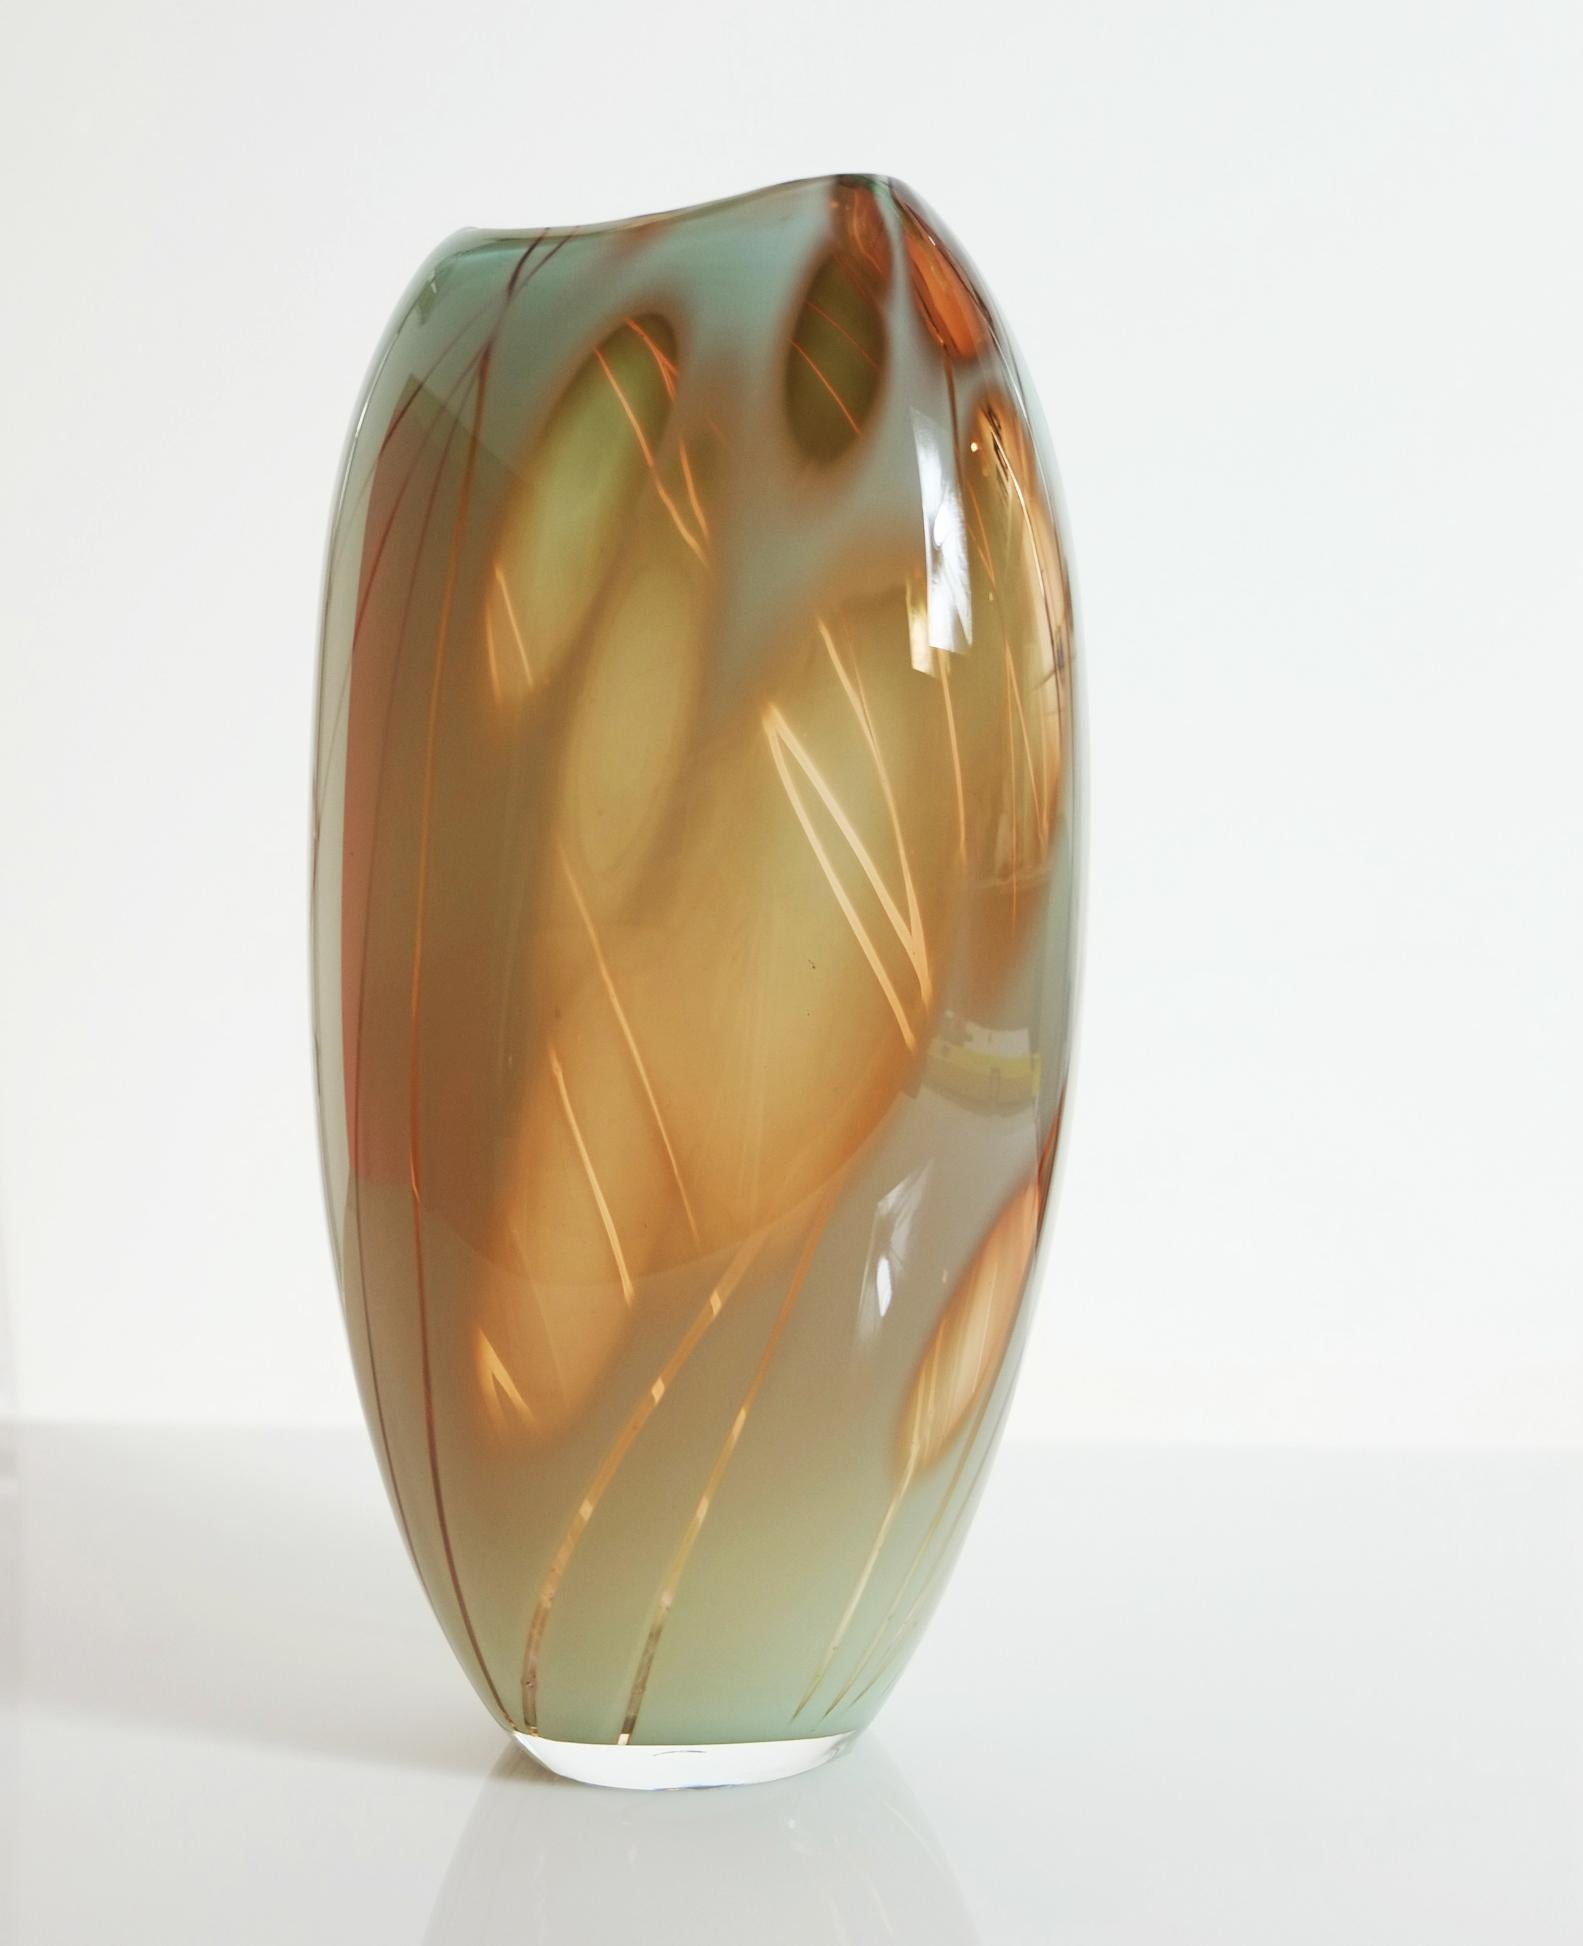 Le récipient en verre Dianthus s'inspire de la plante en utilisant du verre céladen et abricot.
Il a été créé à l'aide de la technique suédoise classique du graal, où le motif est découpé à la main sur un tour à l'aide de roues de gravure au